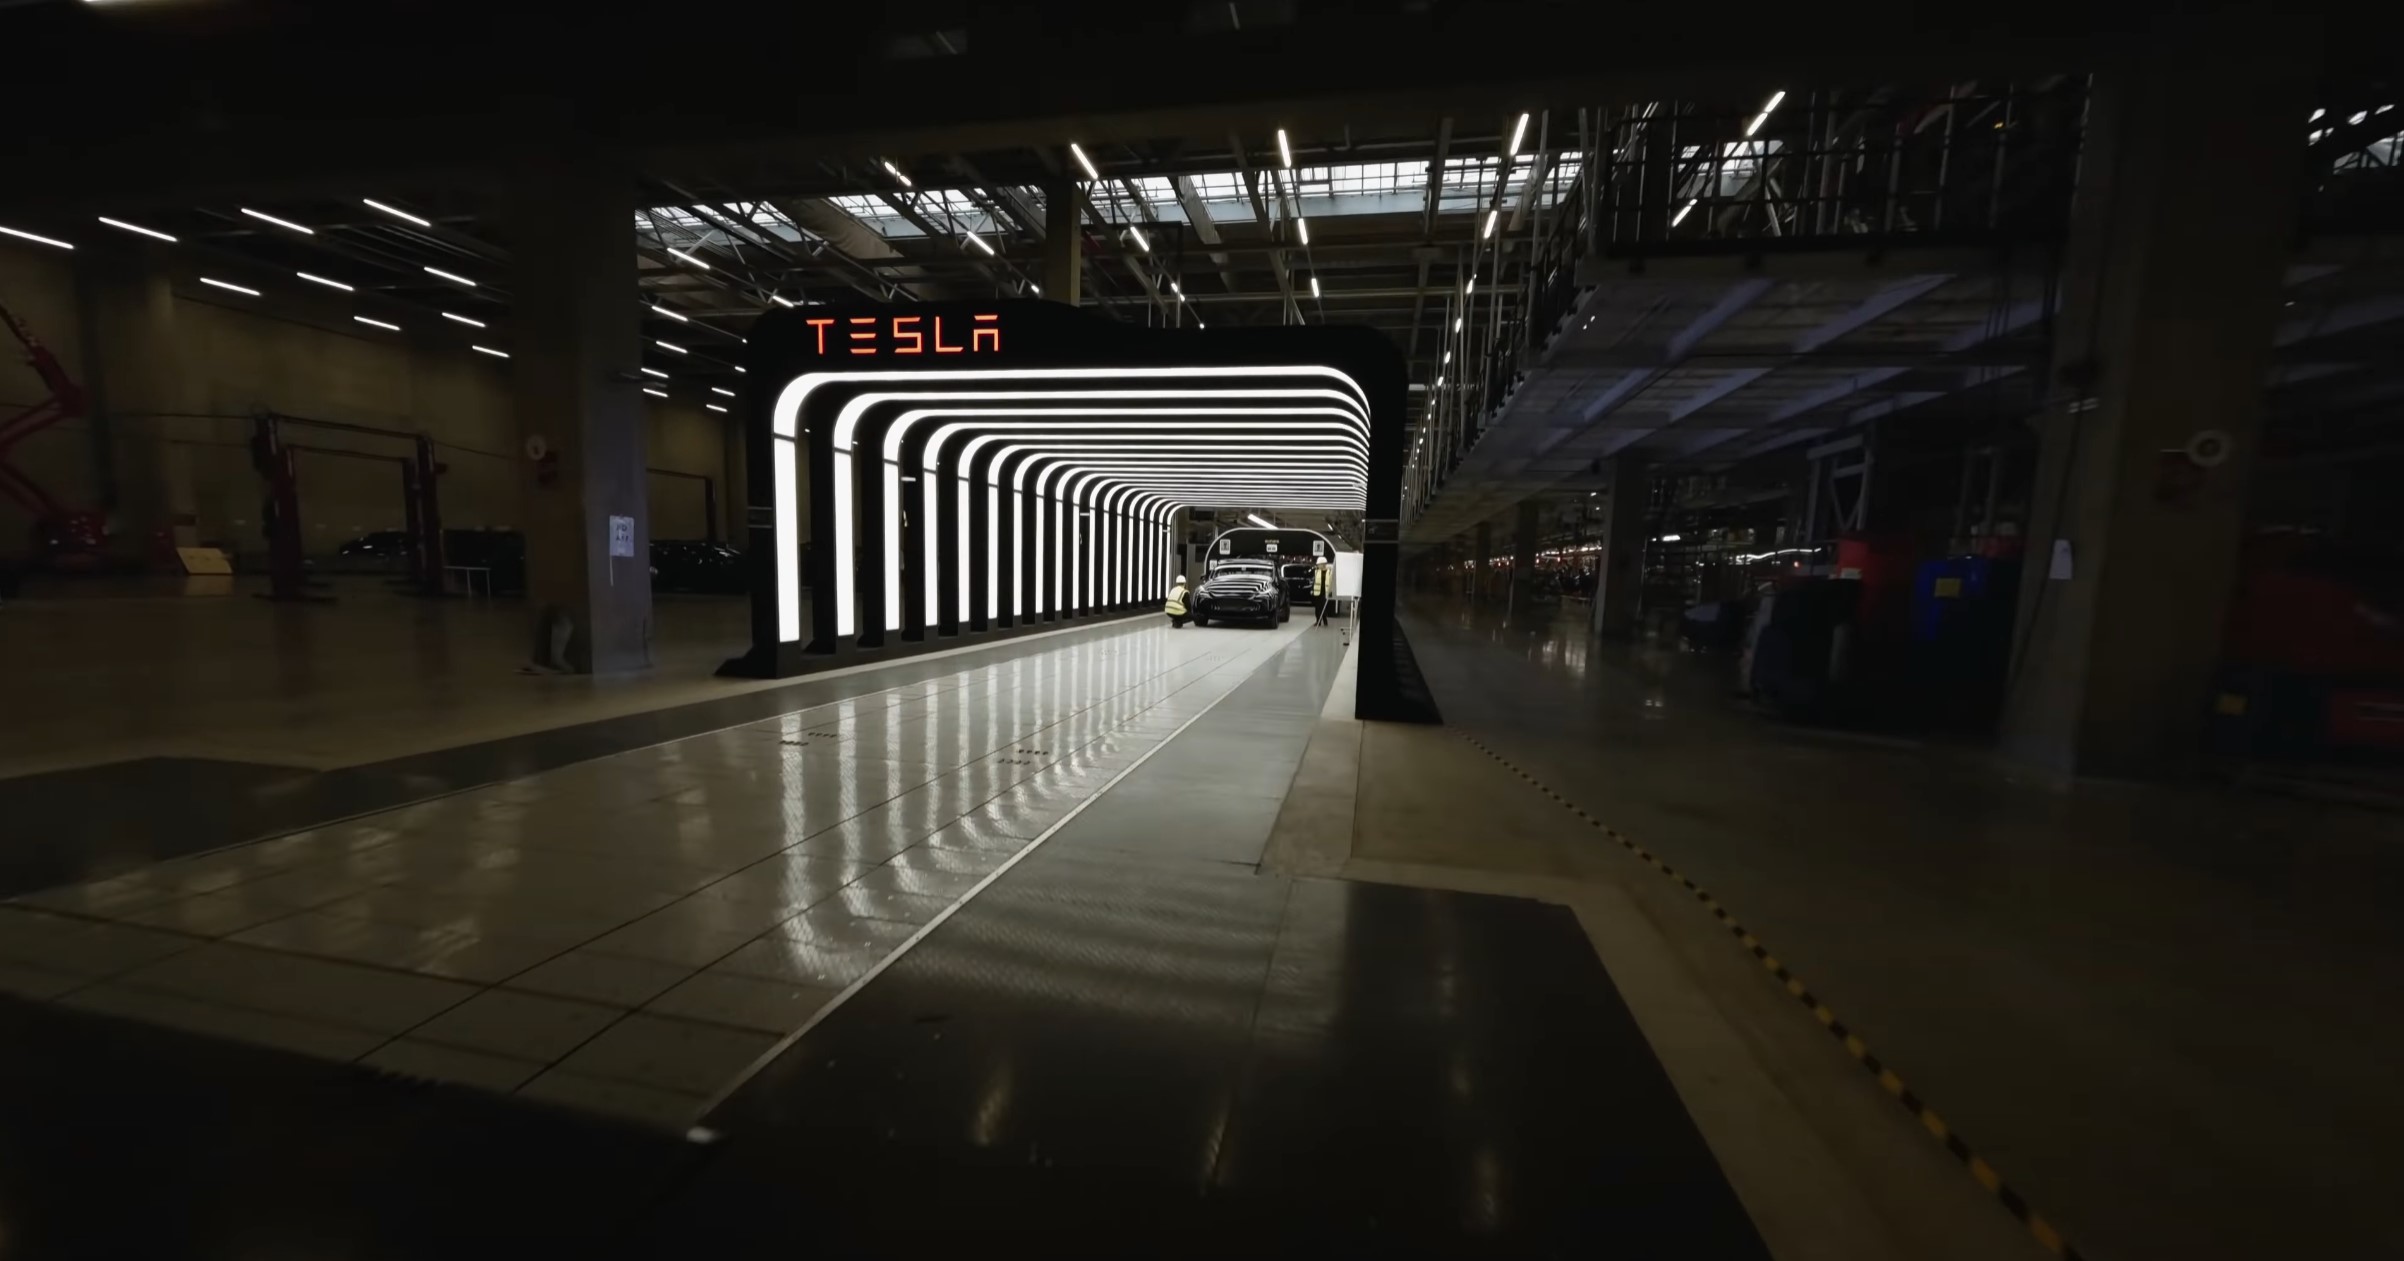 Tesla Gigafactory: Επικό βίντεο με drone FPV μέσα από το νέο εργοστάσιο